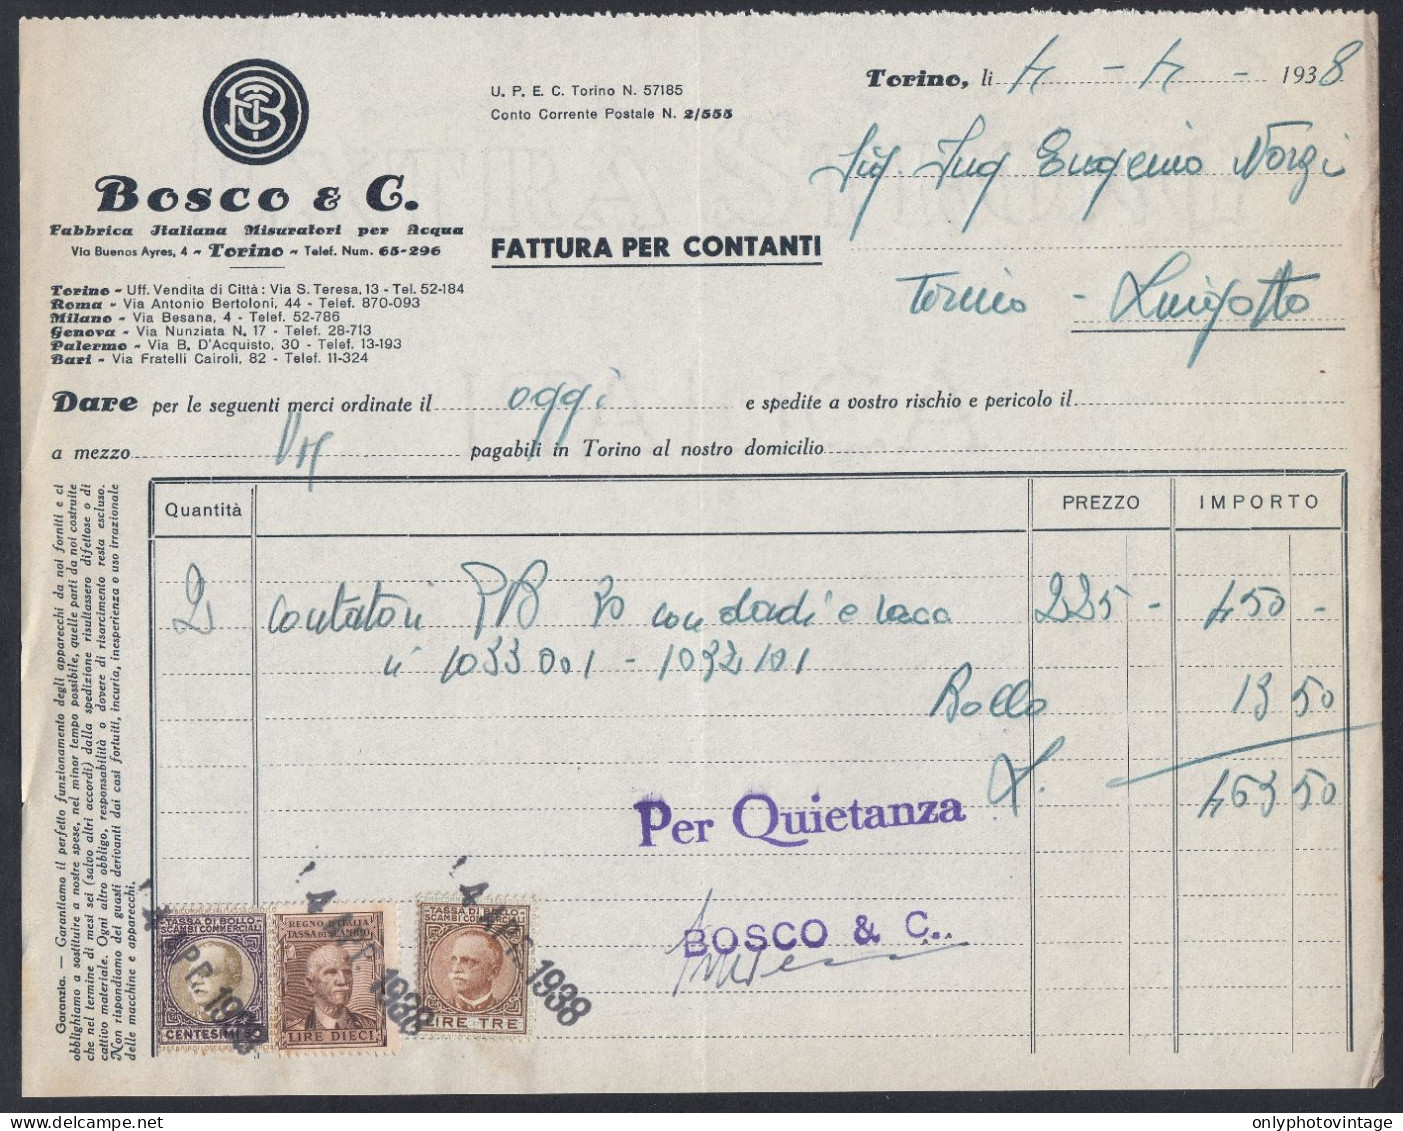 Torino 1938 - Bosco & C. - Fabbrica Italiana Misuratori Acqua - Fattura - Italien